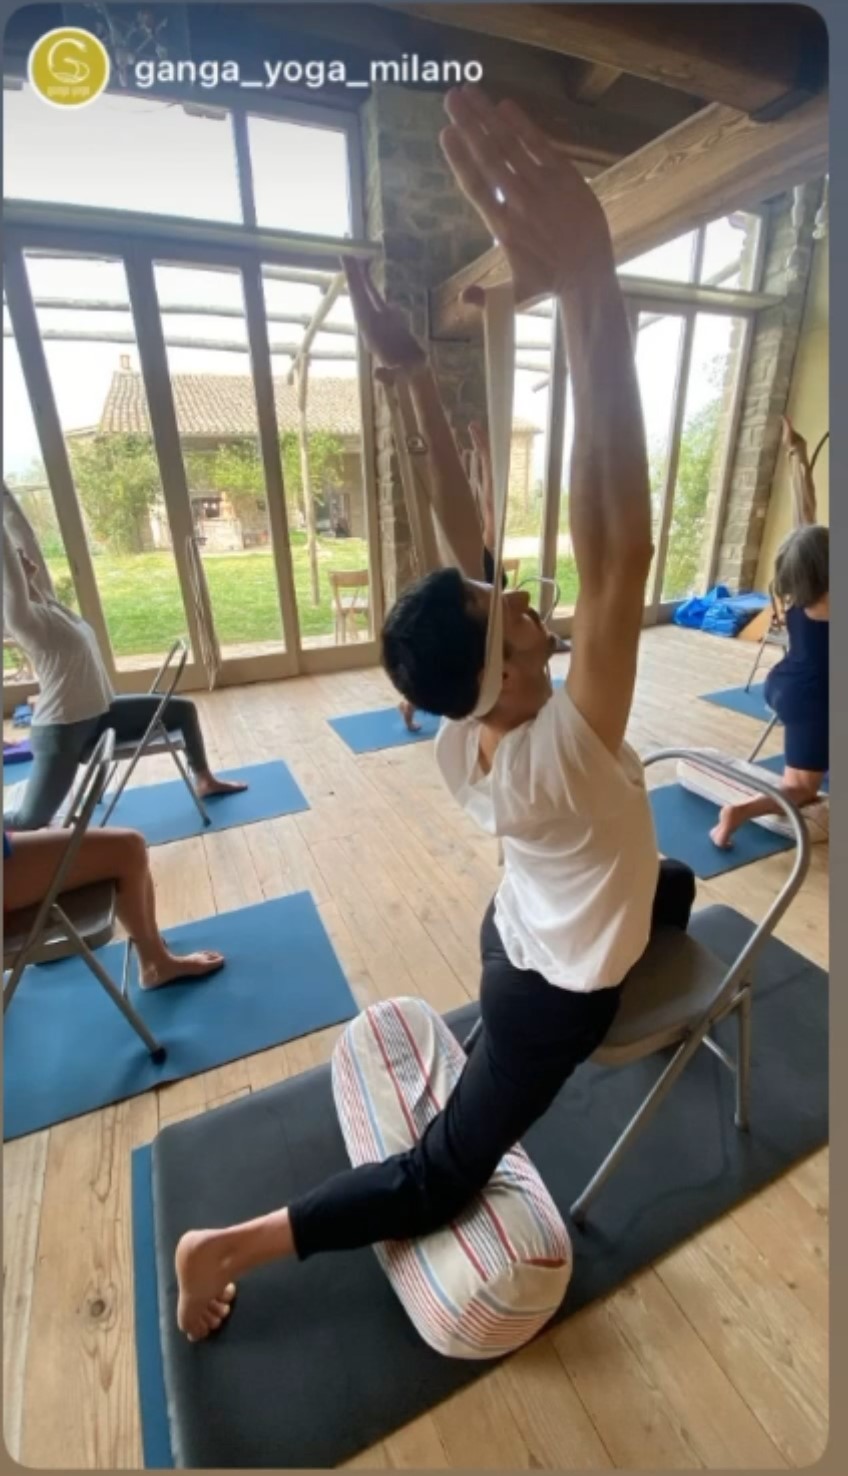 ganga-yoga-iyengar-yoga